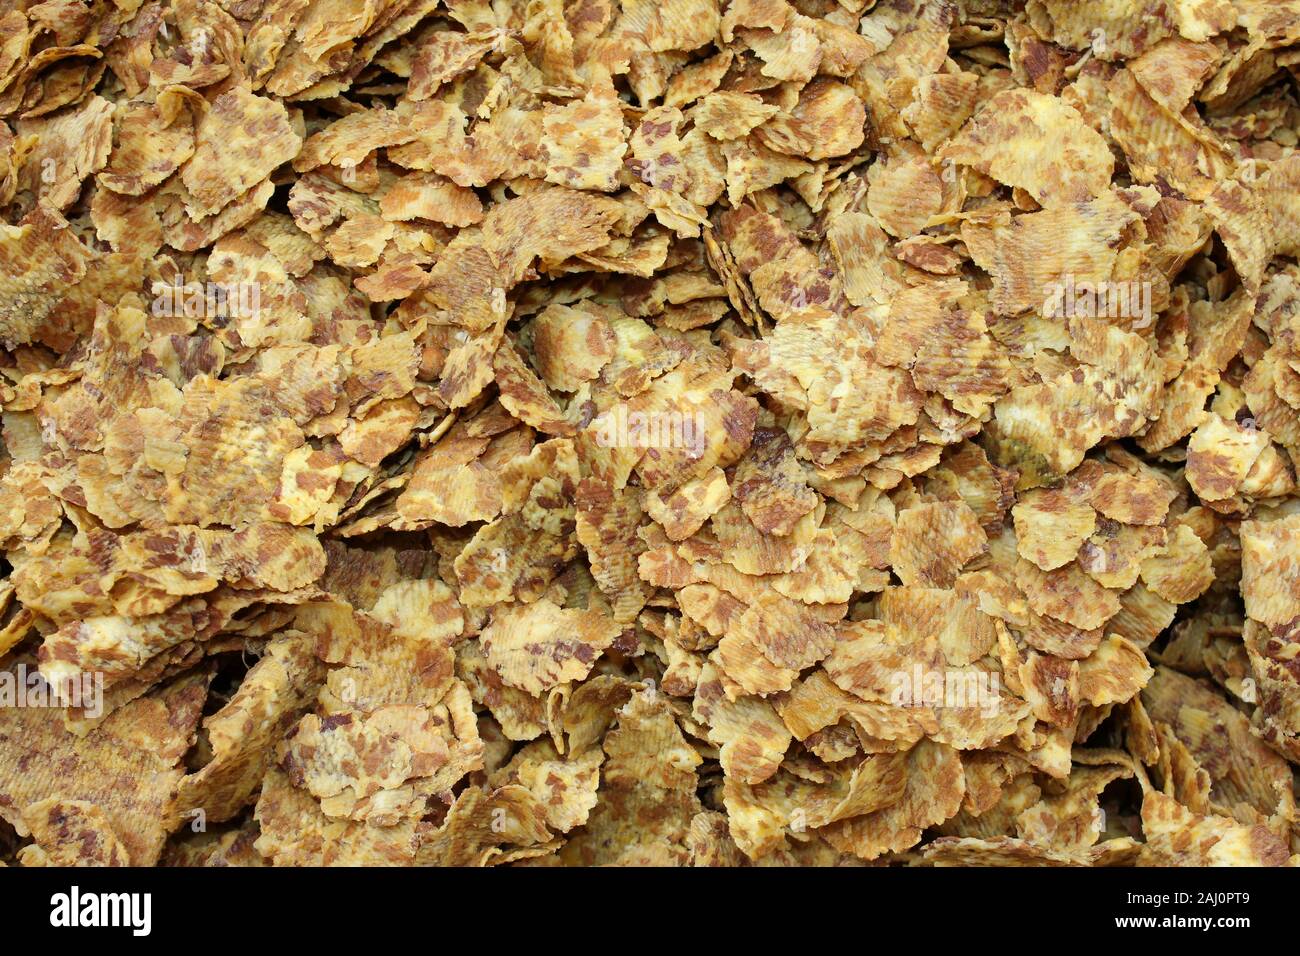 Chips à base de pois chiches frits écrasé, Gujarat, Inde Banque D'Images